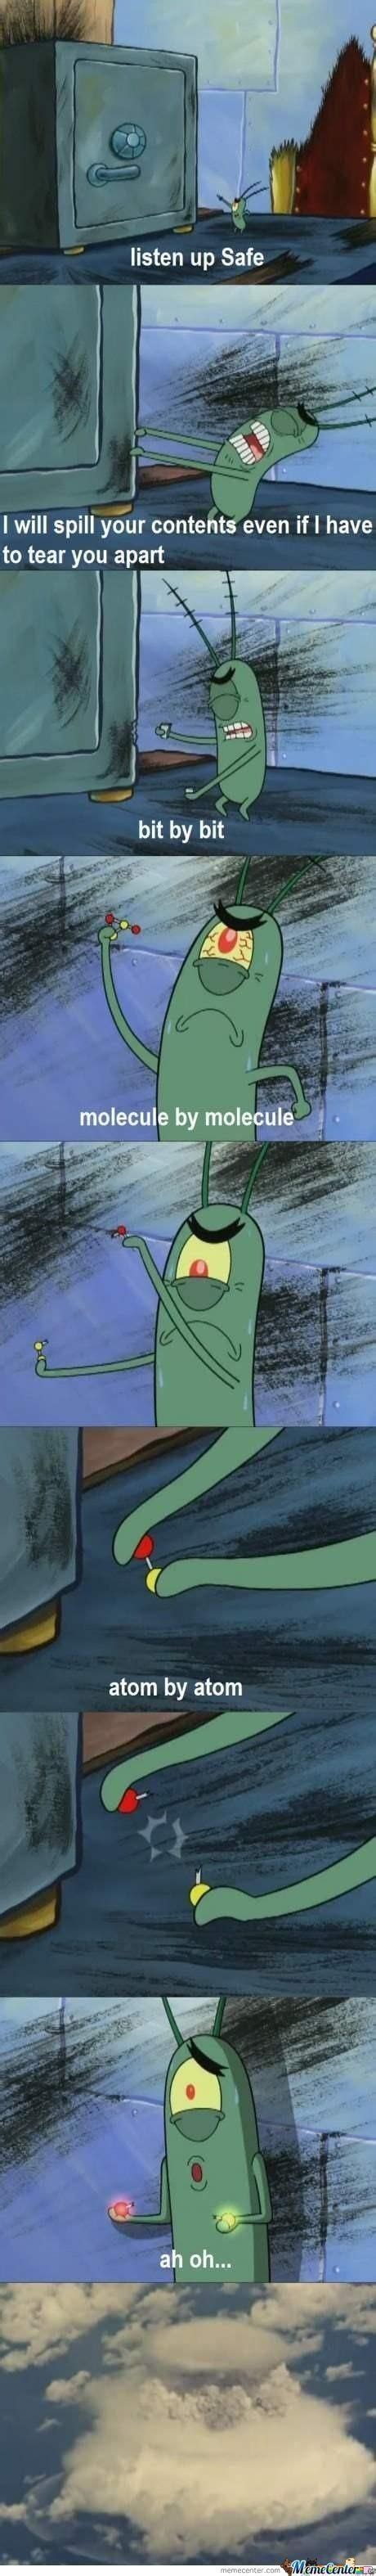 Plankton Meme Subido Por Trayklyncastro Memedroid